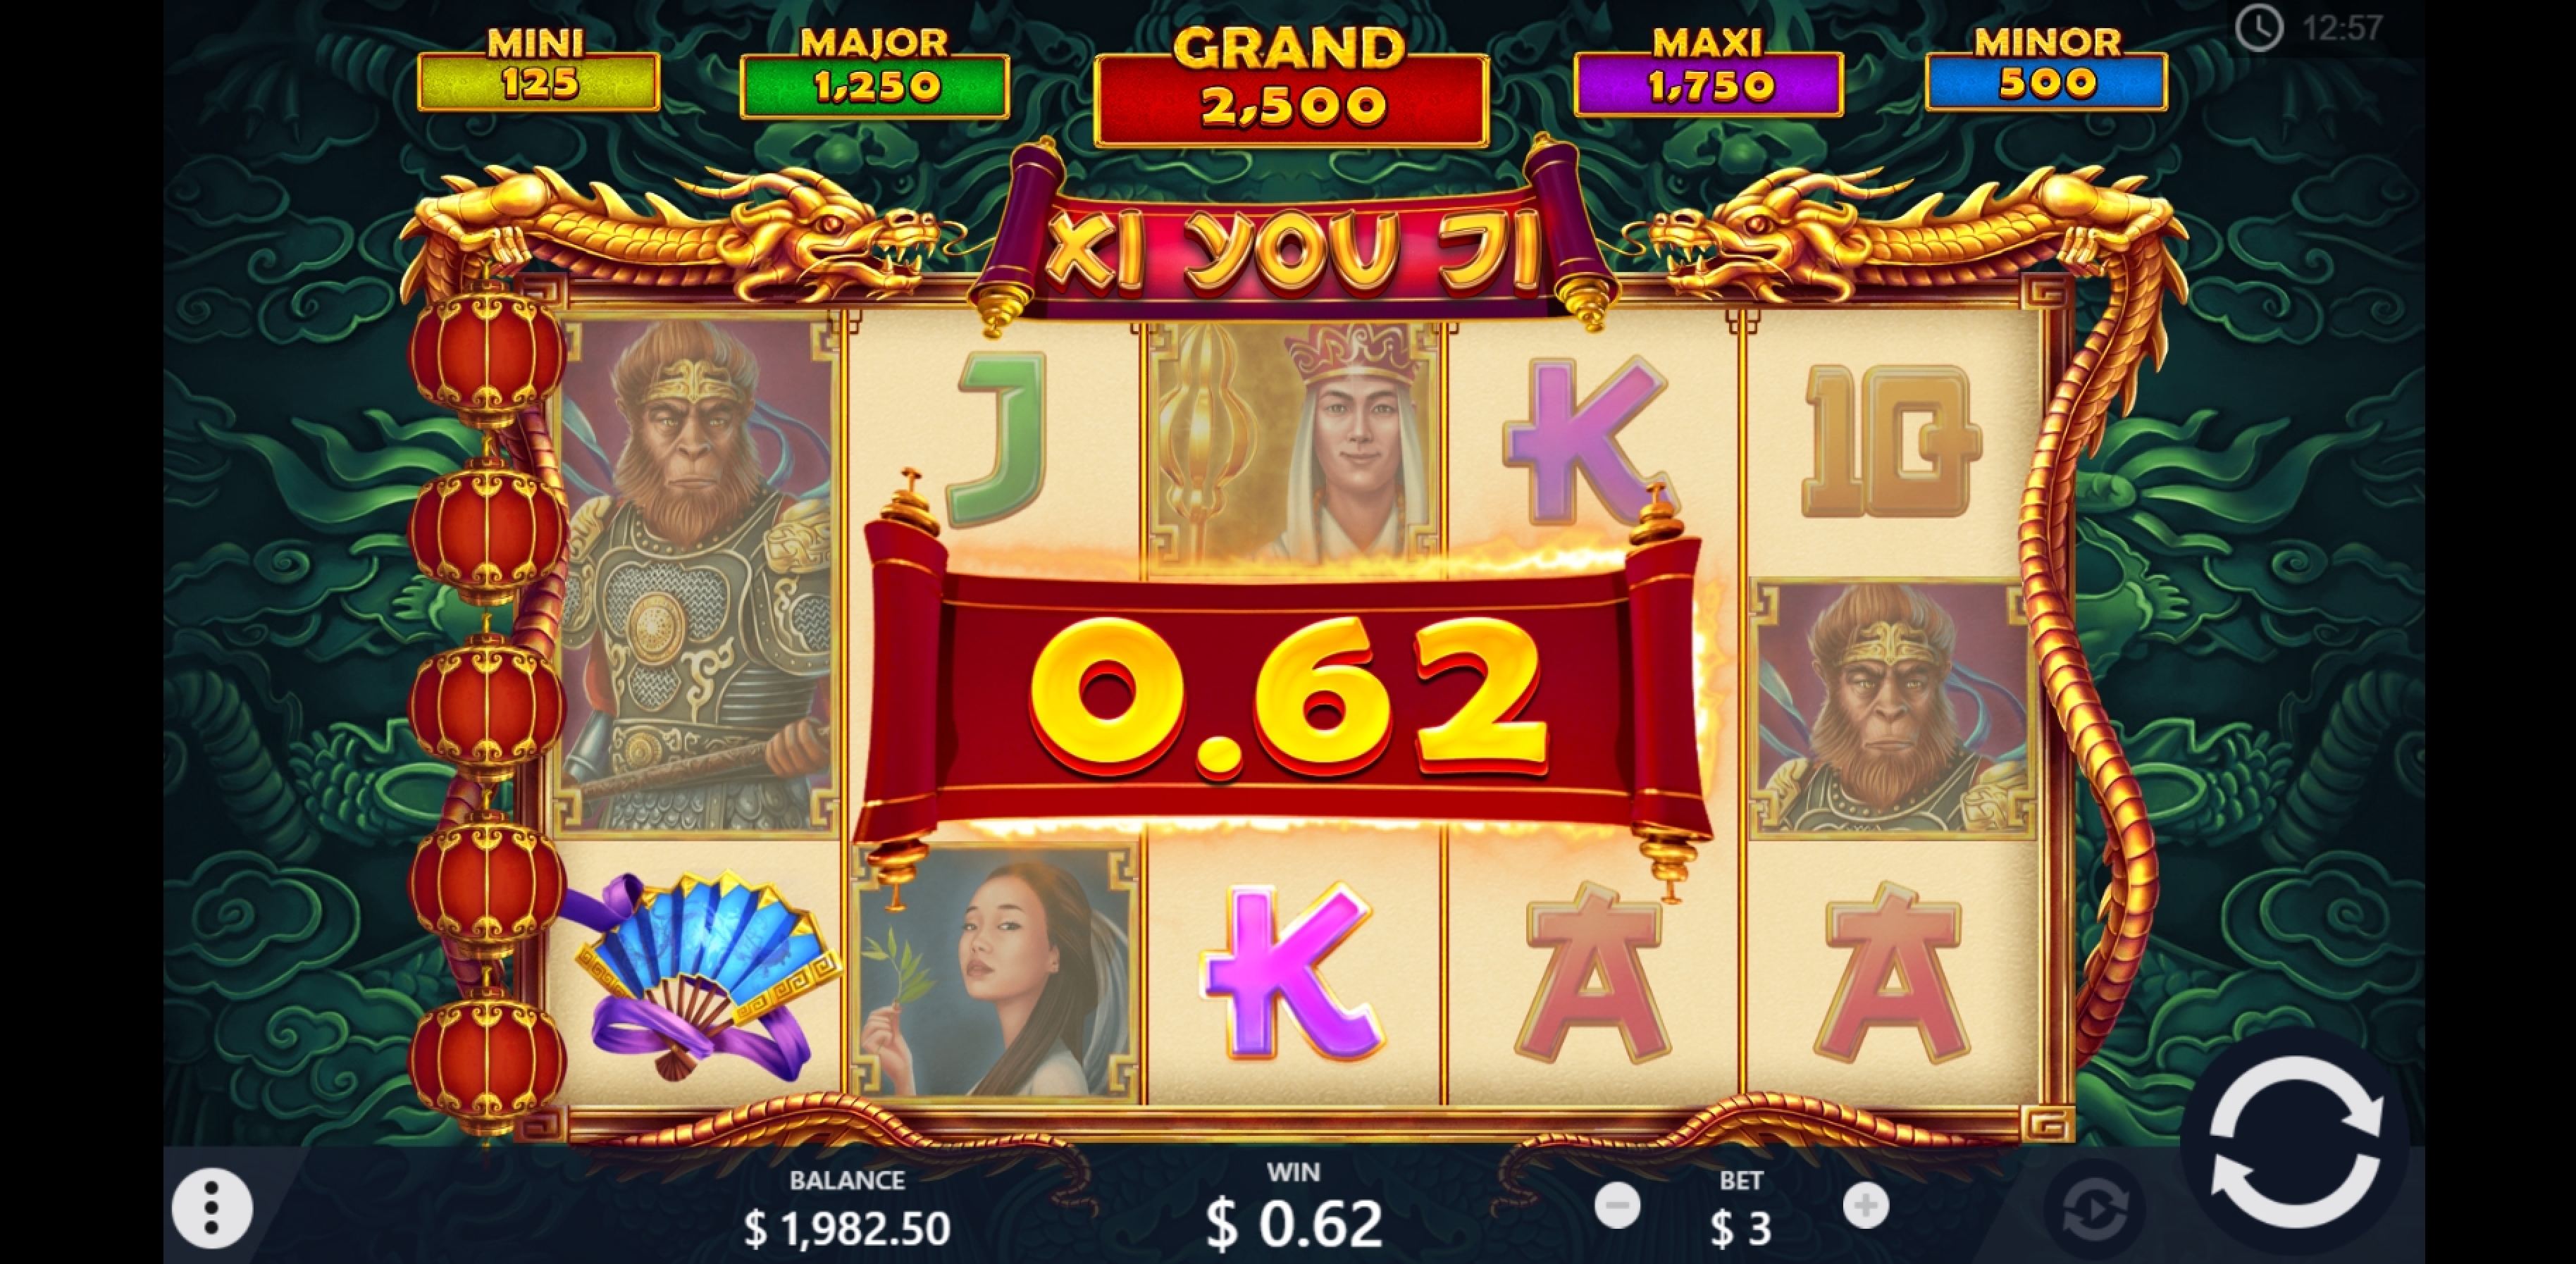 Win Money in Xi You Ji Free Slot Game by PariPlay